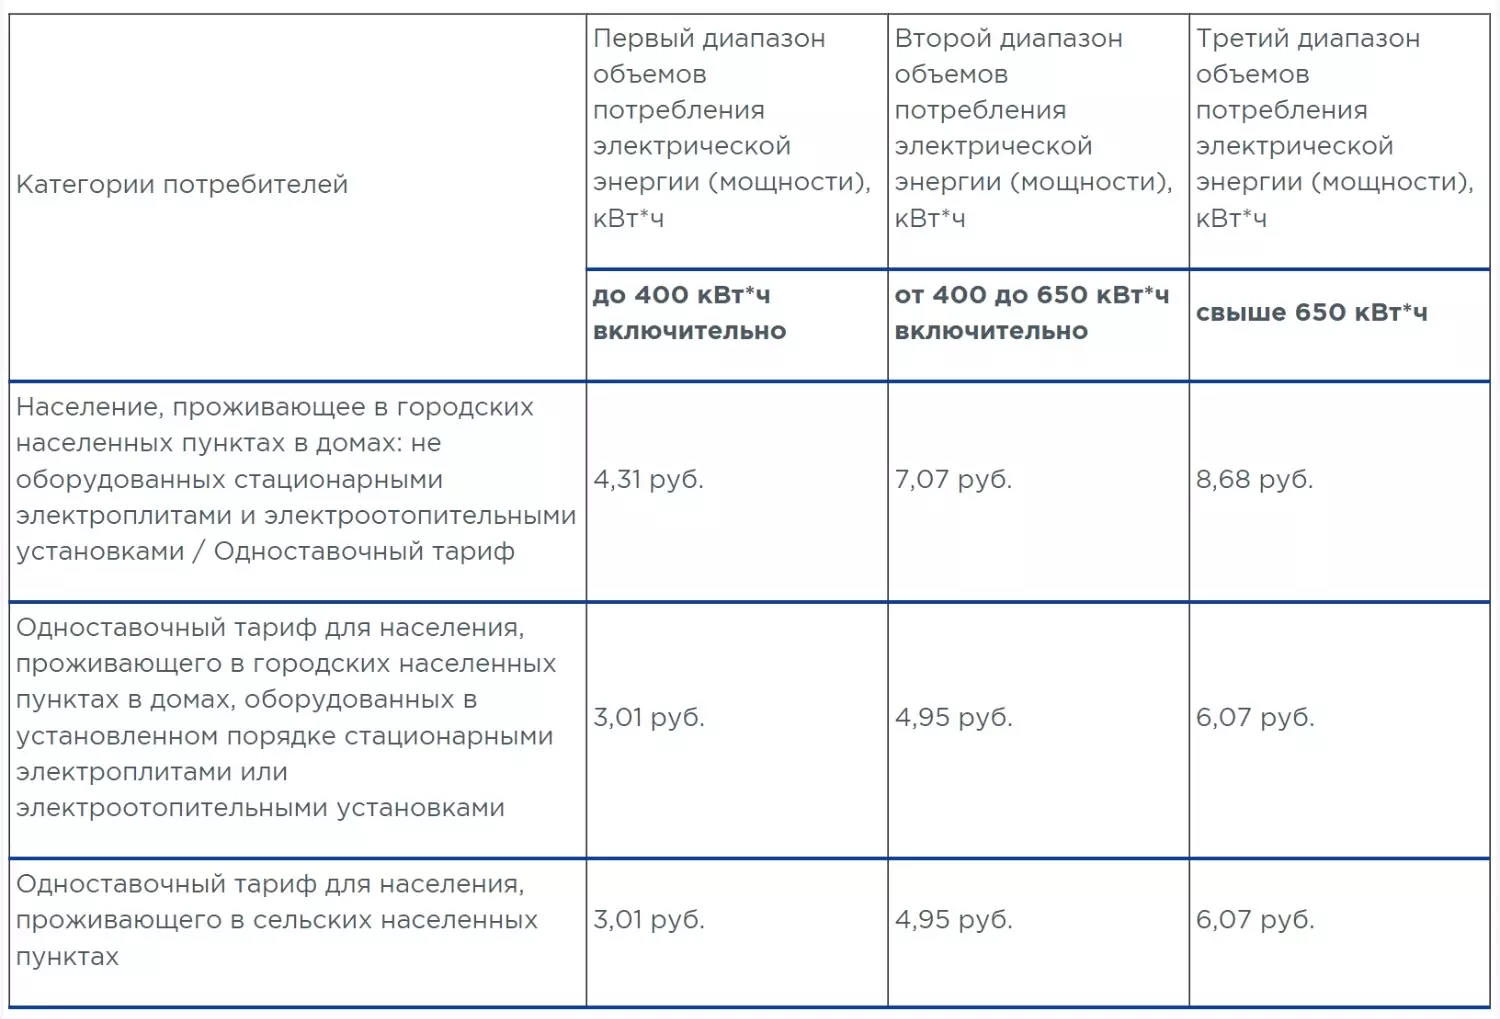 Кемеровская область — единственный регион России, где действует градация тарифов на электроэнергию в зависимости от объёмов потребления